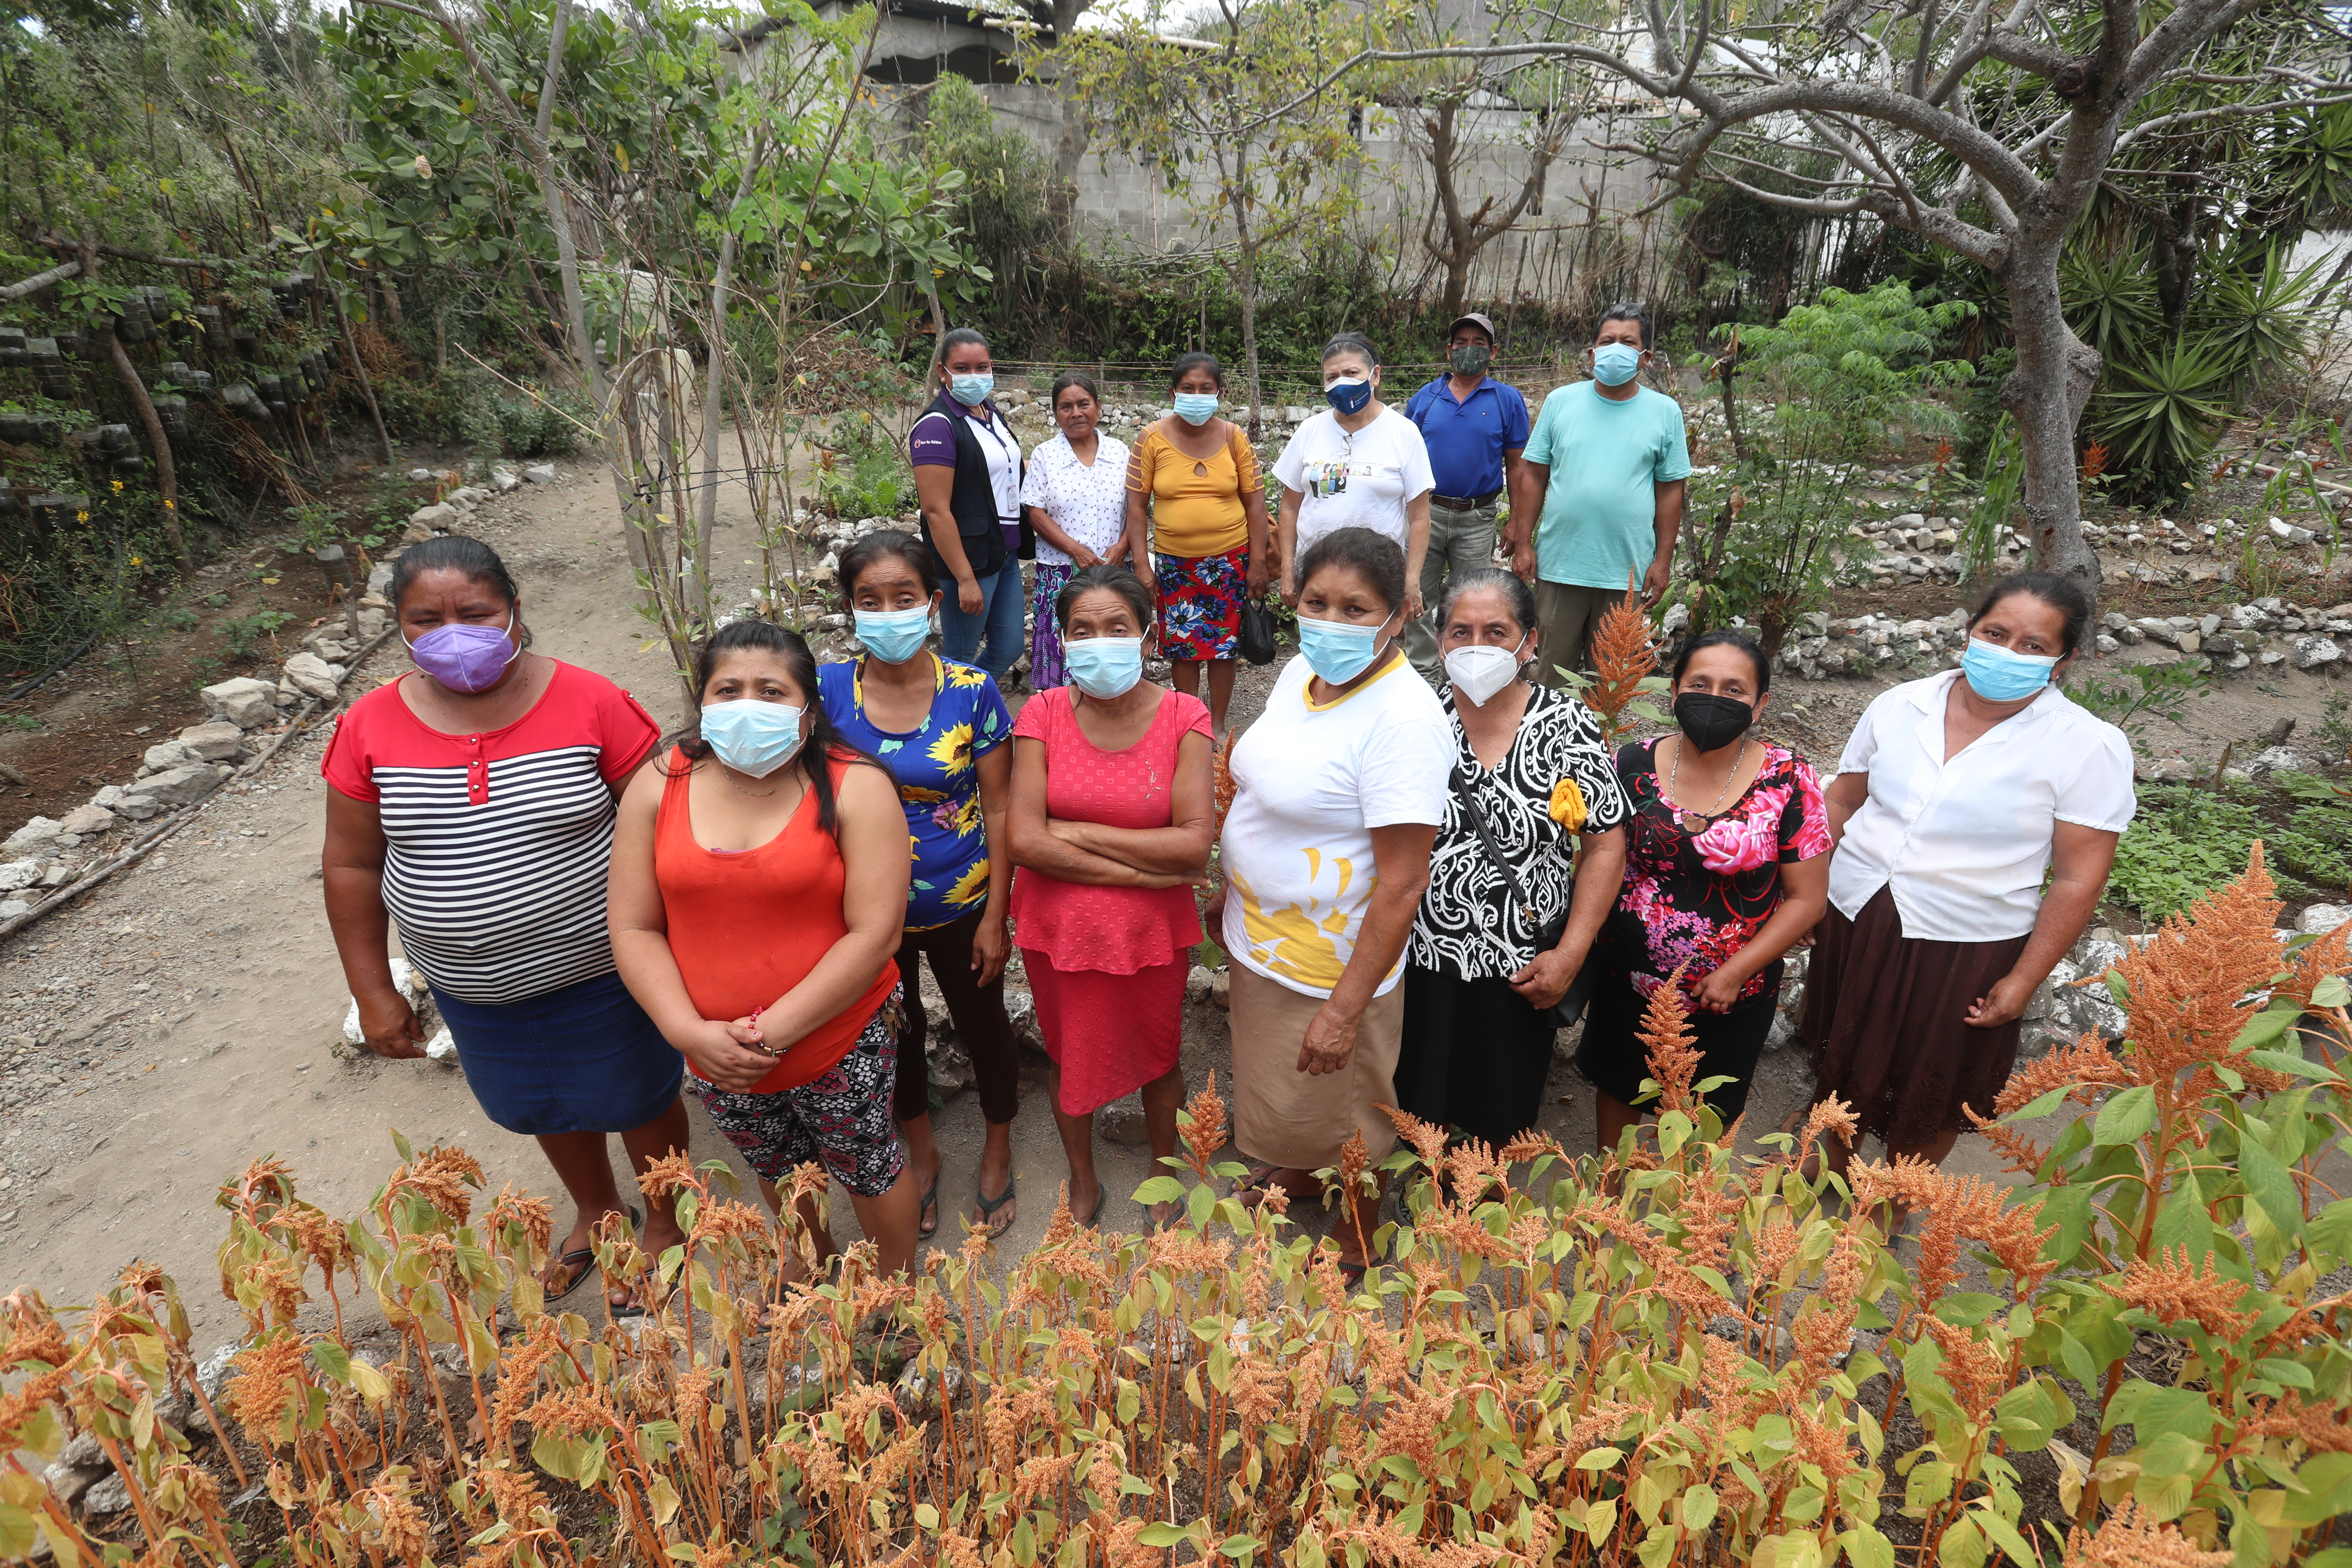 La Asociación de Mujeres Progresistas tiene más de 200 integrantes. Juntas crearon proyectos autosostenibles que permiten a la comunidad sobrevivir en medio de las crisis. (Foto Prensa Libre: Juan Diego González)